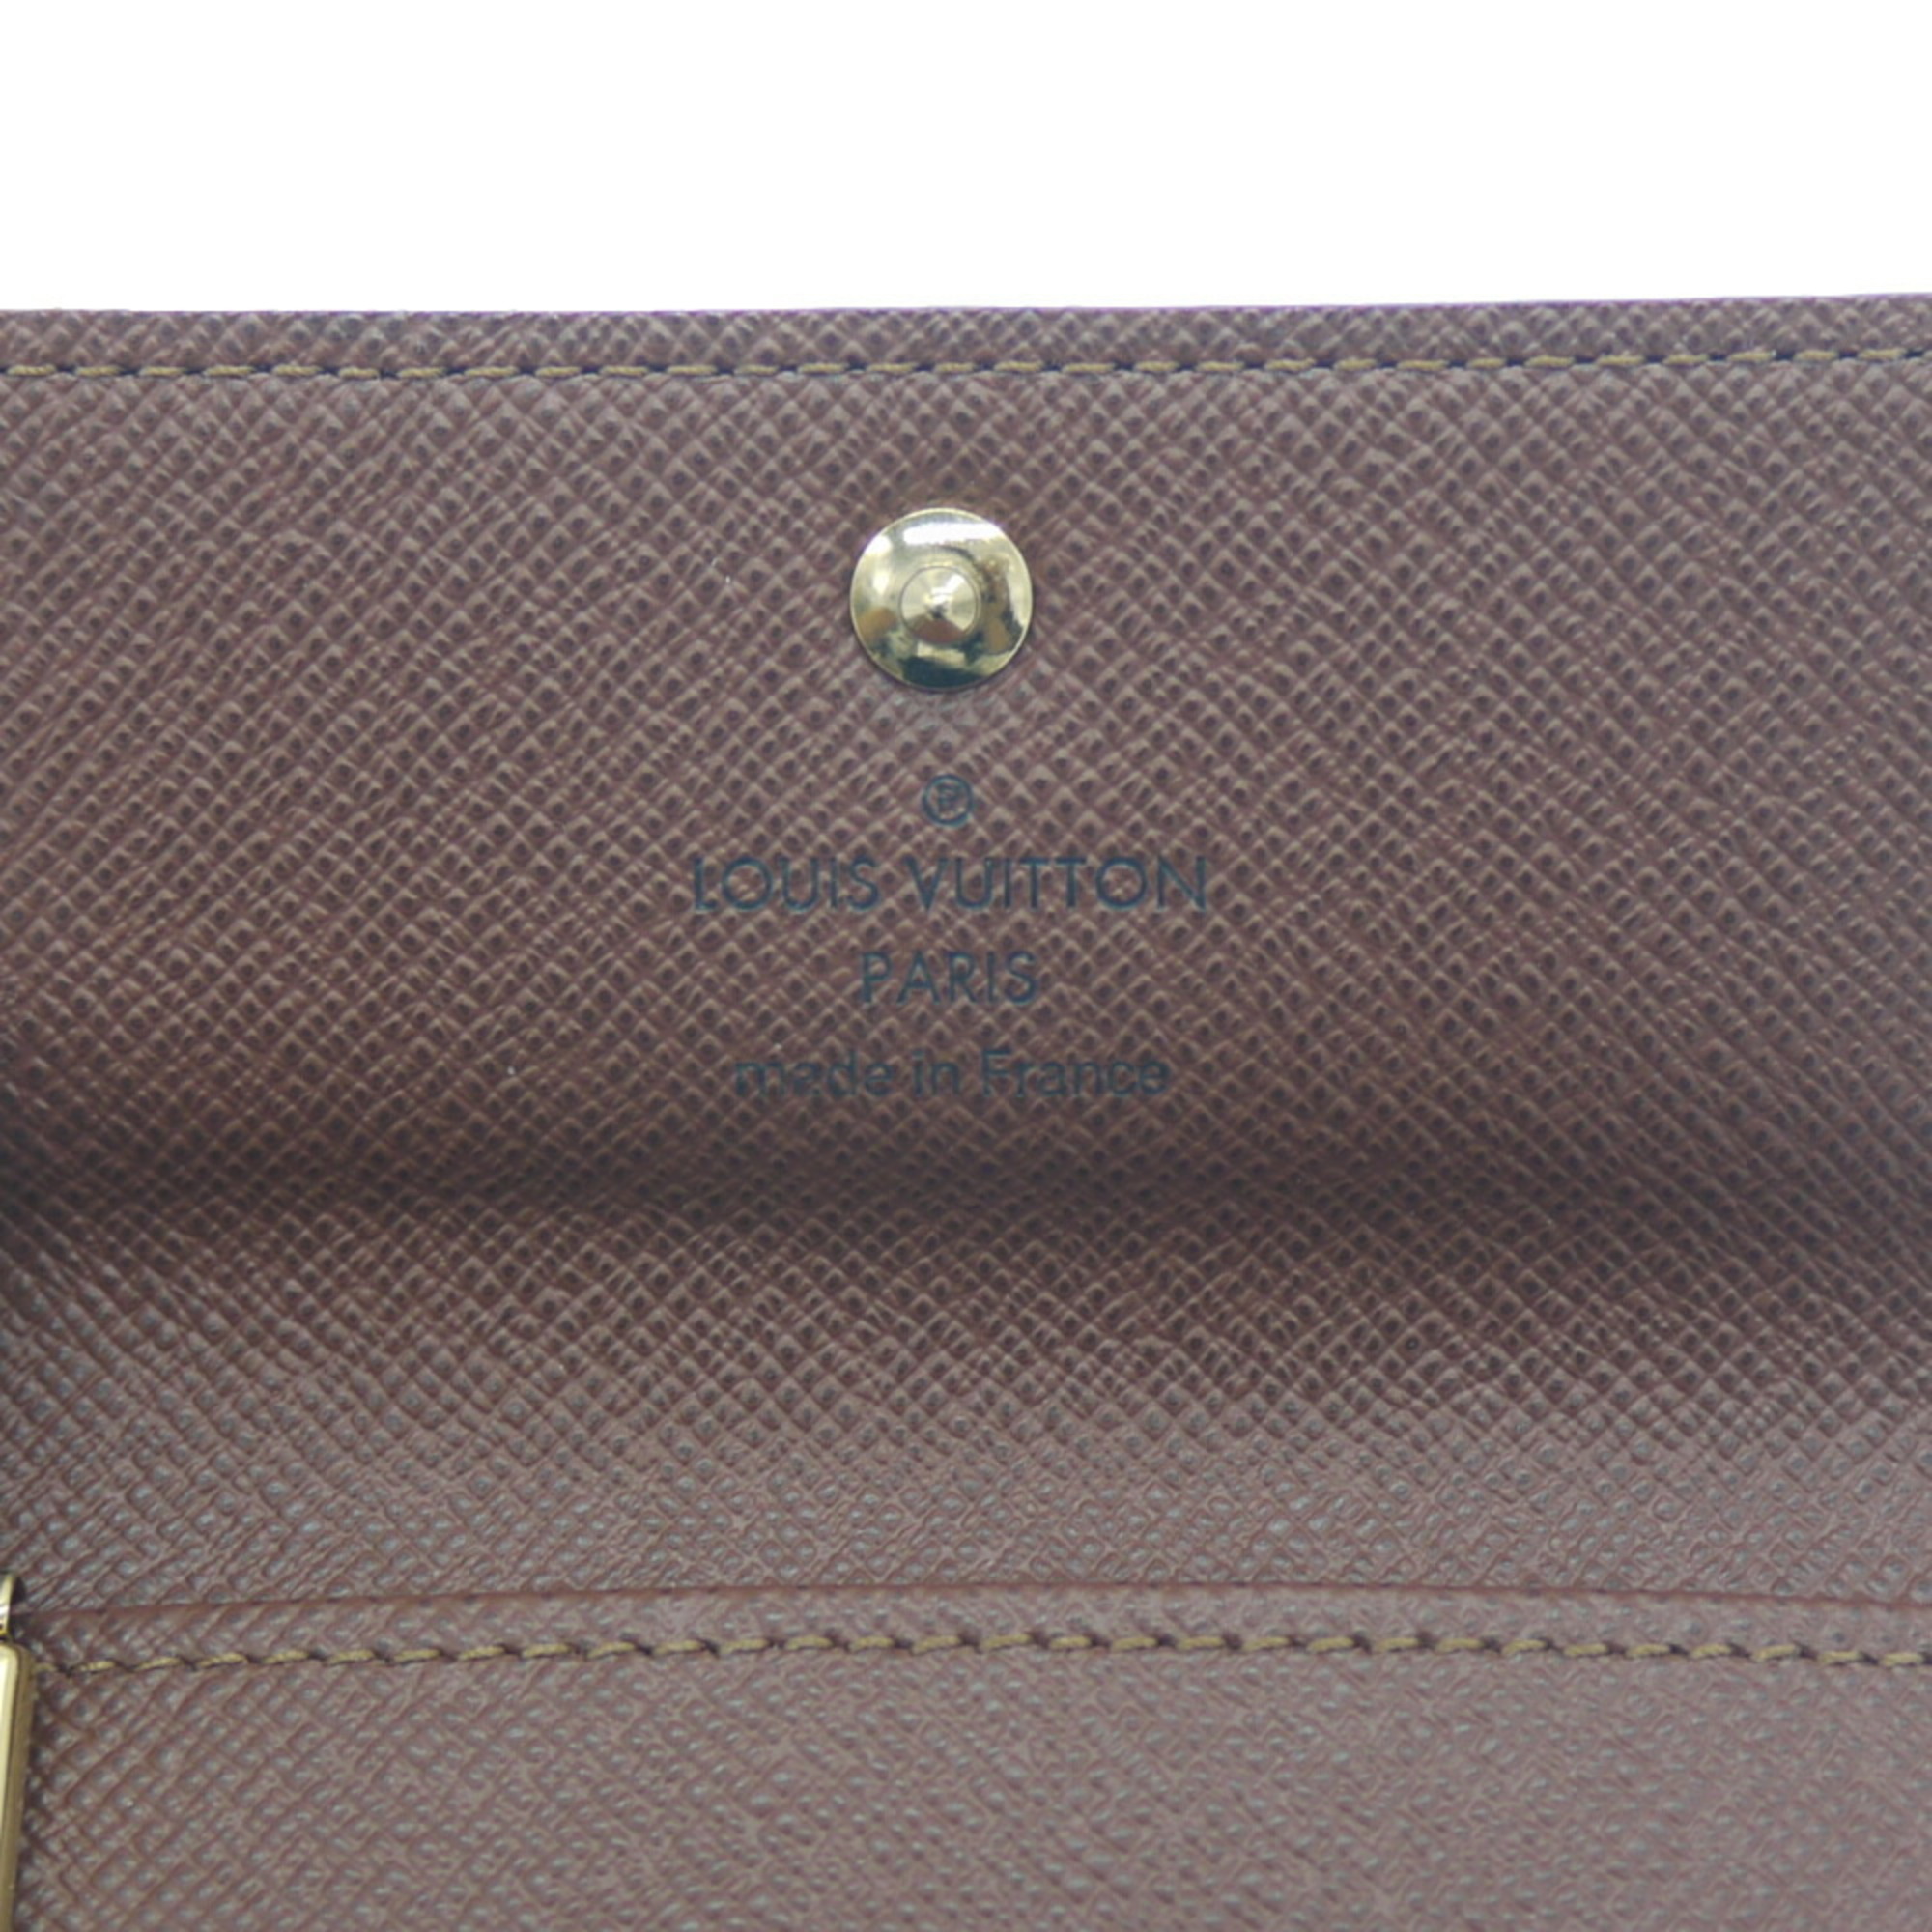 LOUIS VUITTON Louis Vuitton Multicle 4 Monogram Key Case Holder M69517 M62631